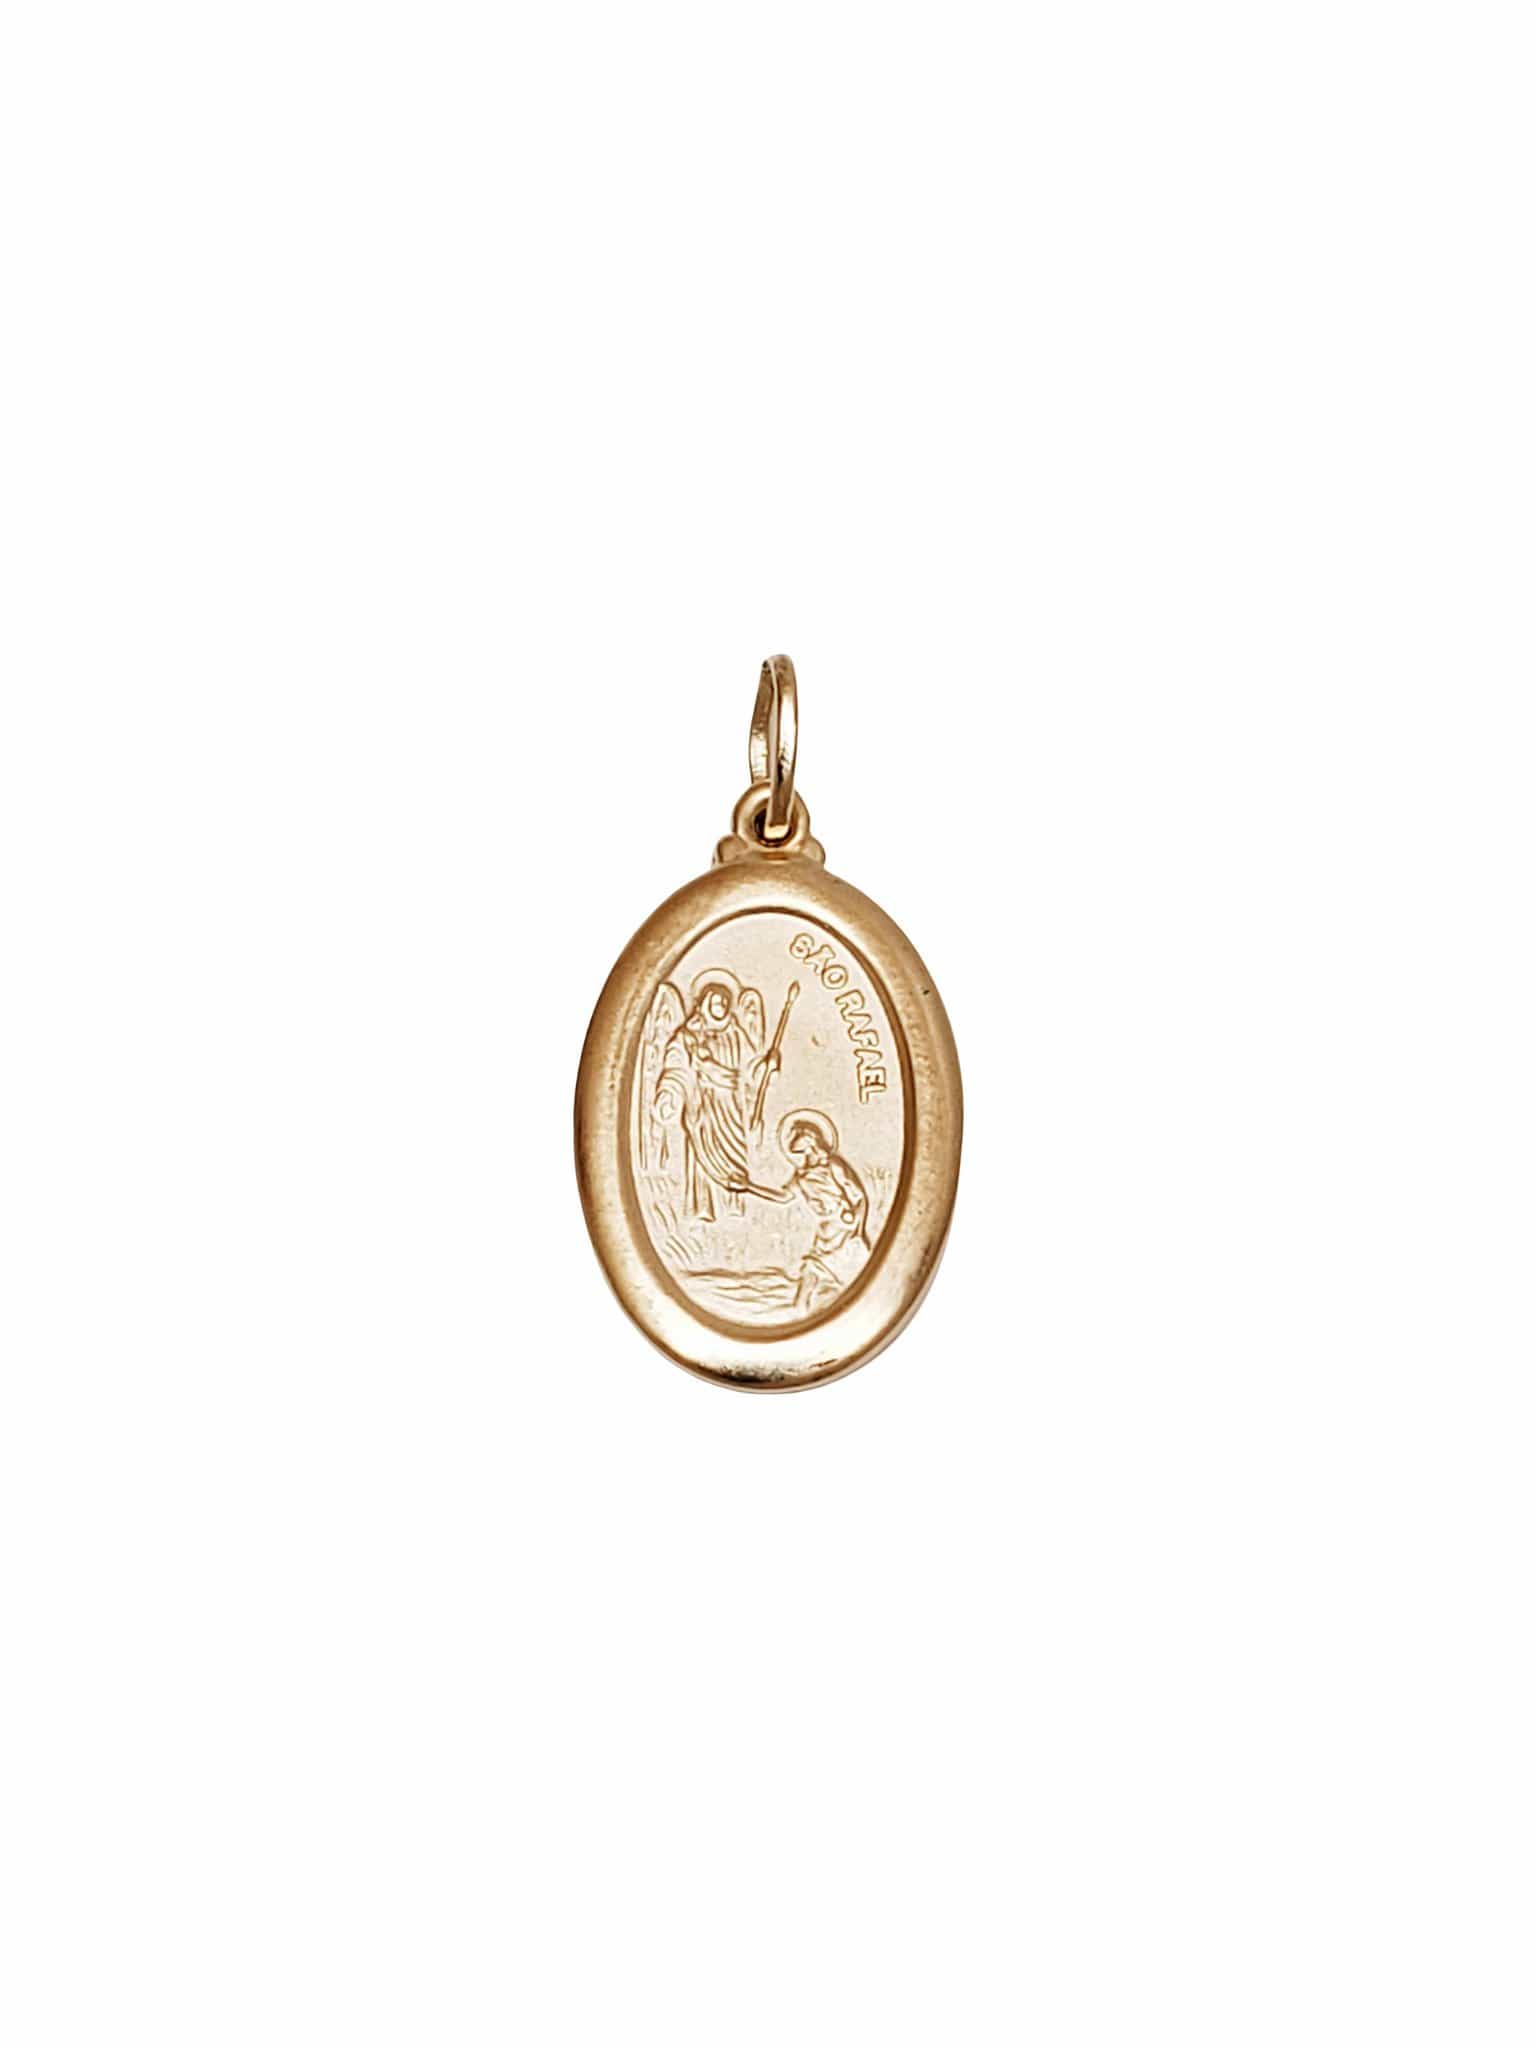 Pingente São Rafael Arcanjo de Prata de Lei 925 com Banho de Ouro 18 k-TerraCotta Arte Sacra